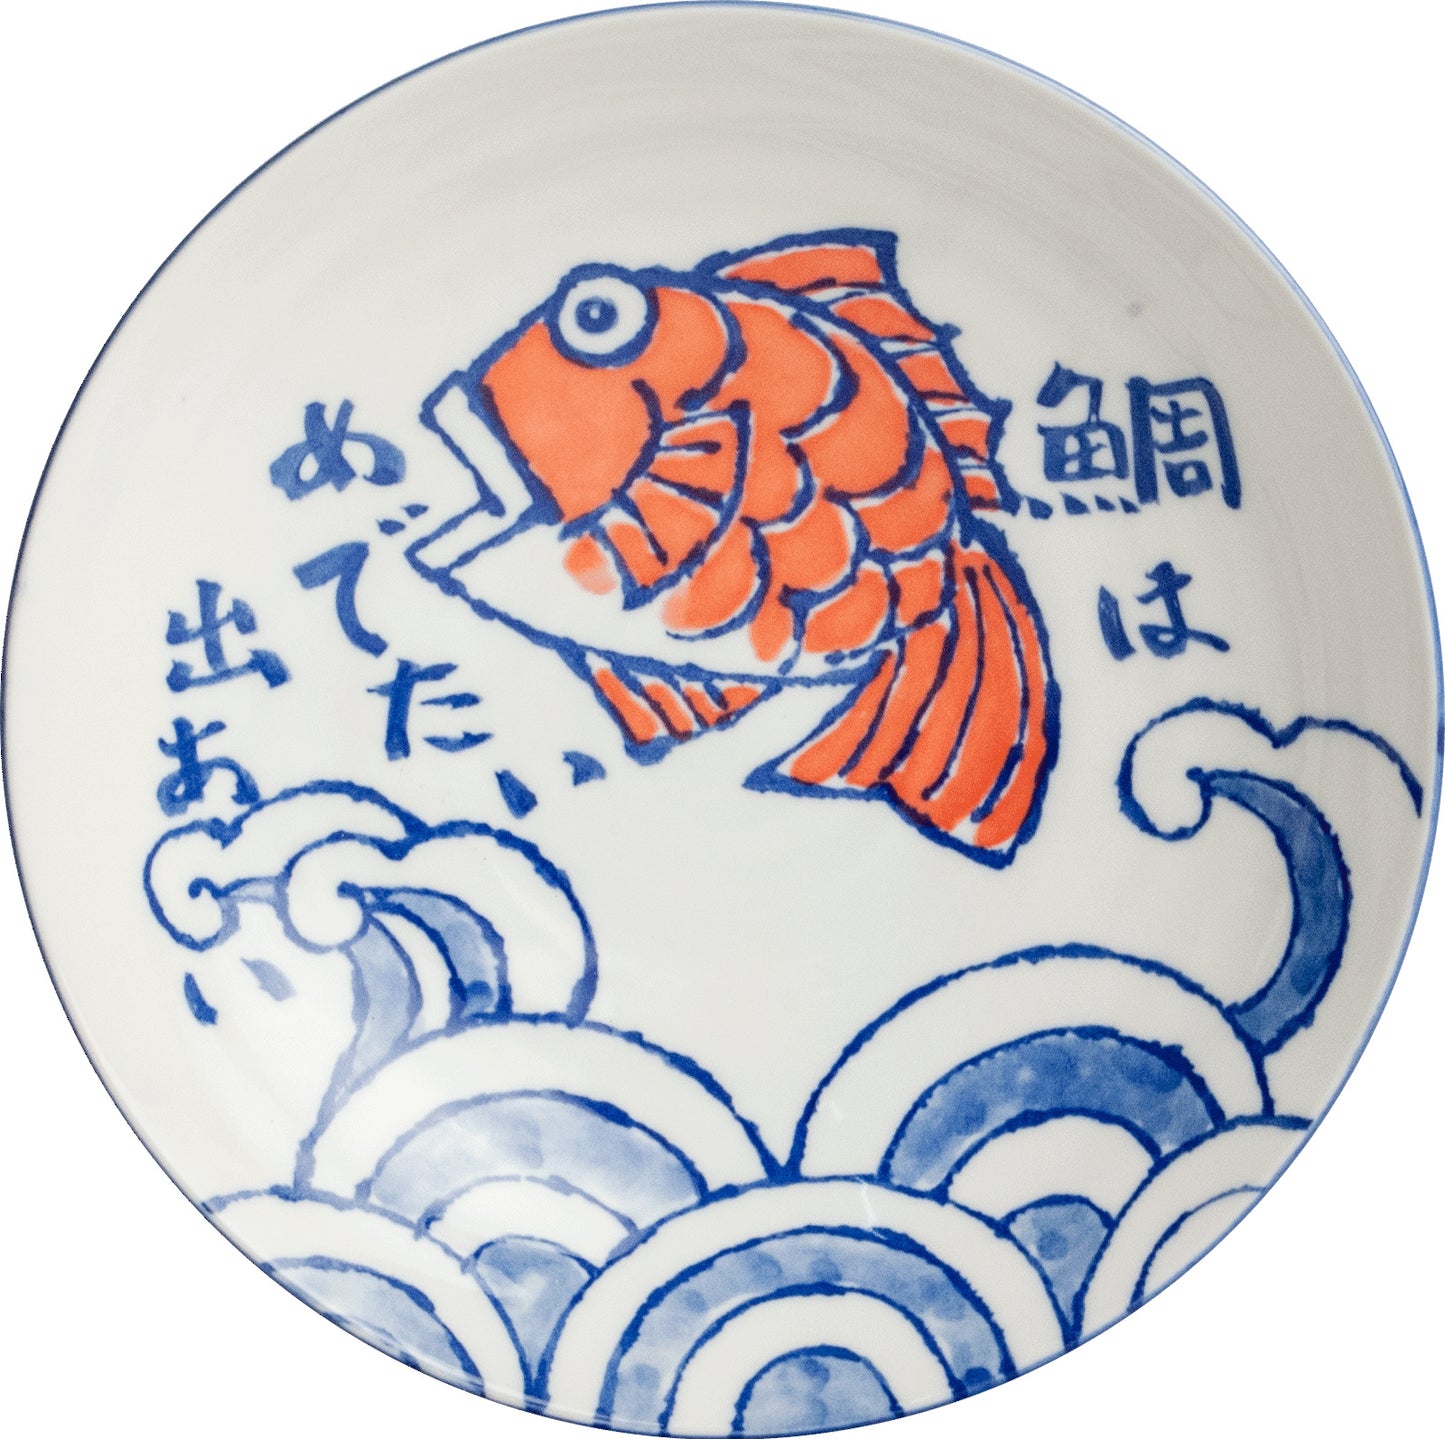 Japan Plate Sakana Ø21,5 cm | H5 cm